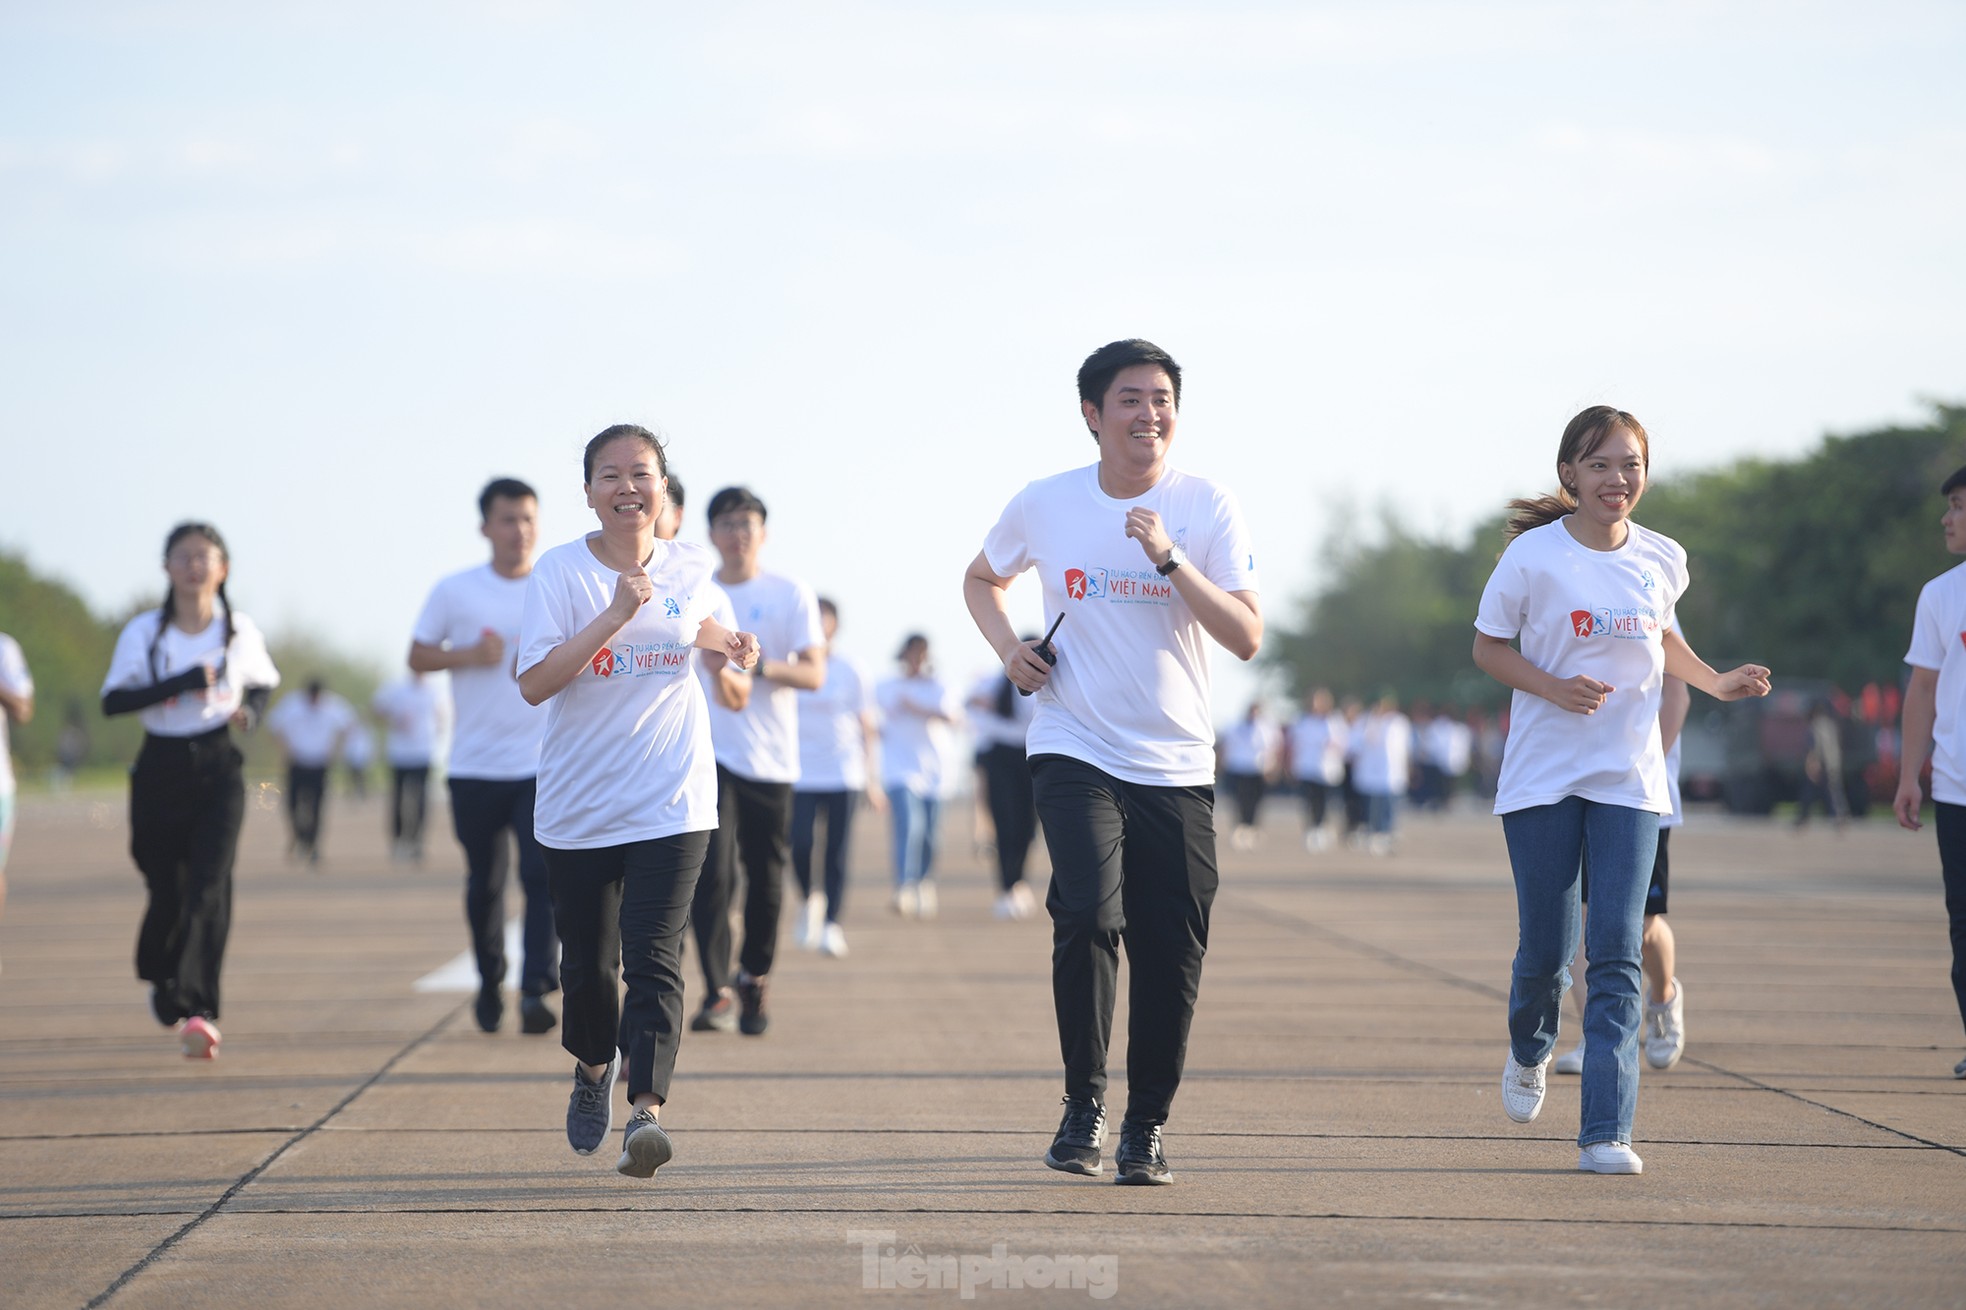 Hoa hậu Đỗ Thị Hà, Đoàn Thiên Ân cùng hơn 200 sinh viên tham gia giải chạy ở Trường Sa ảnh 6